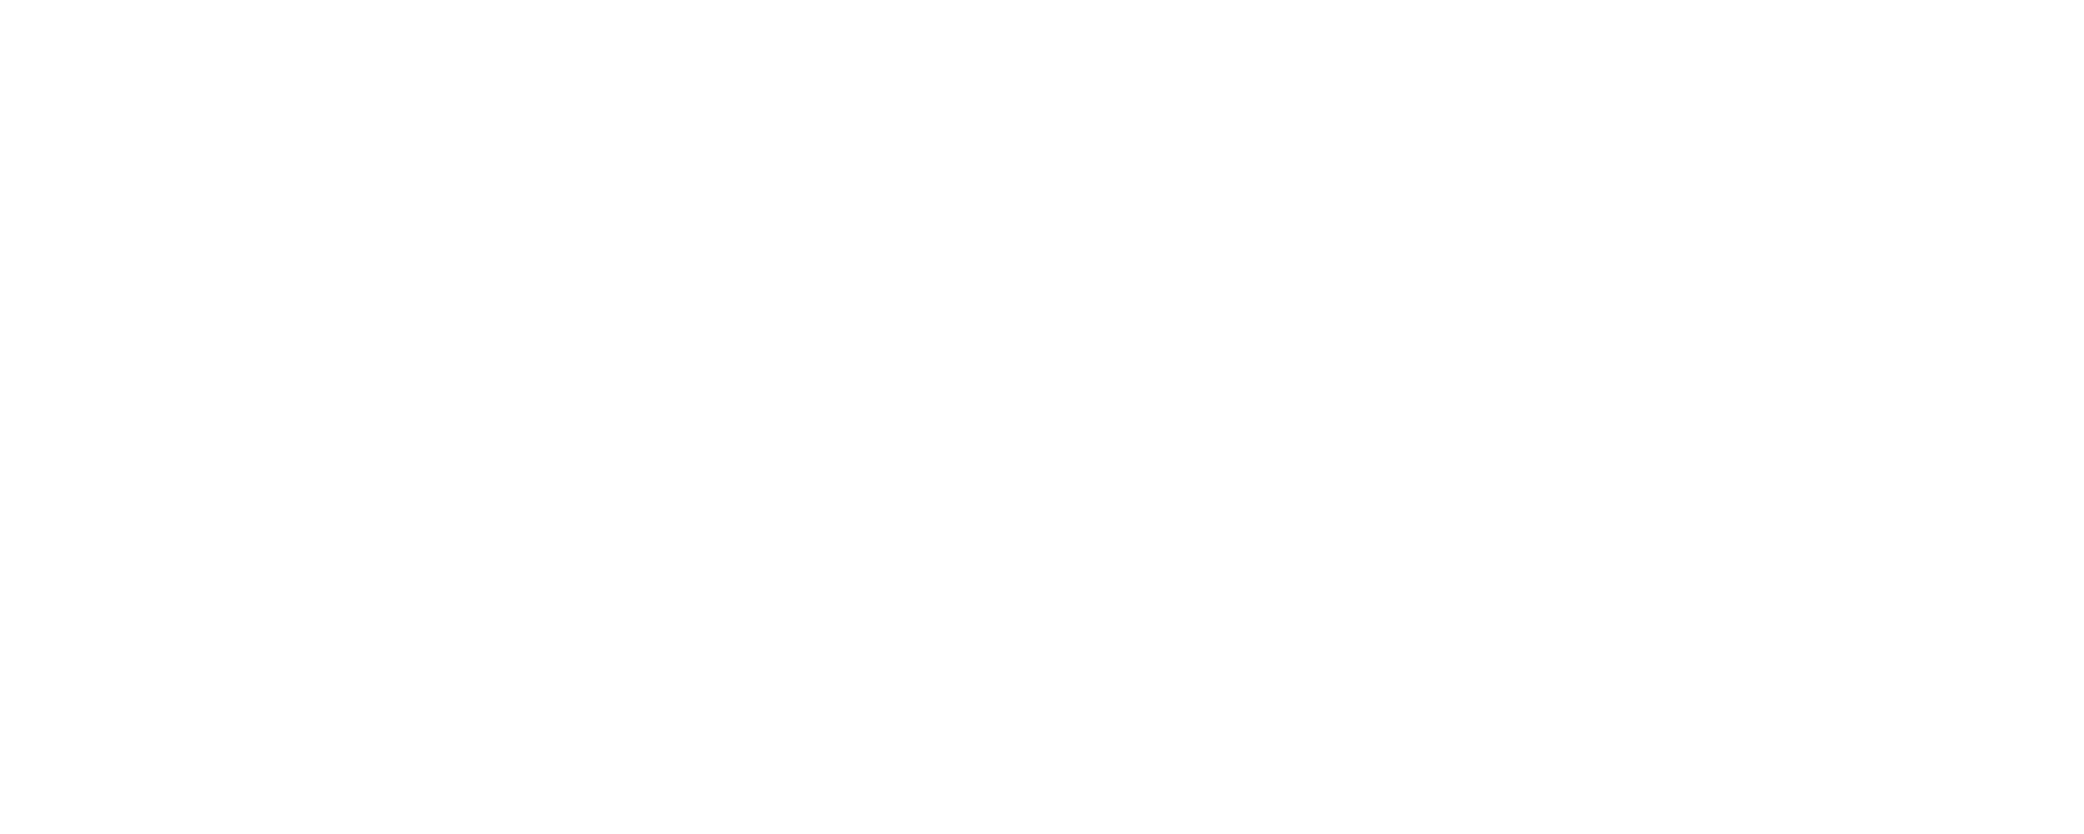 Equitrans Midstream White 3 logo